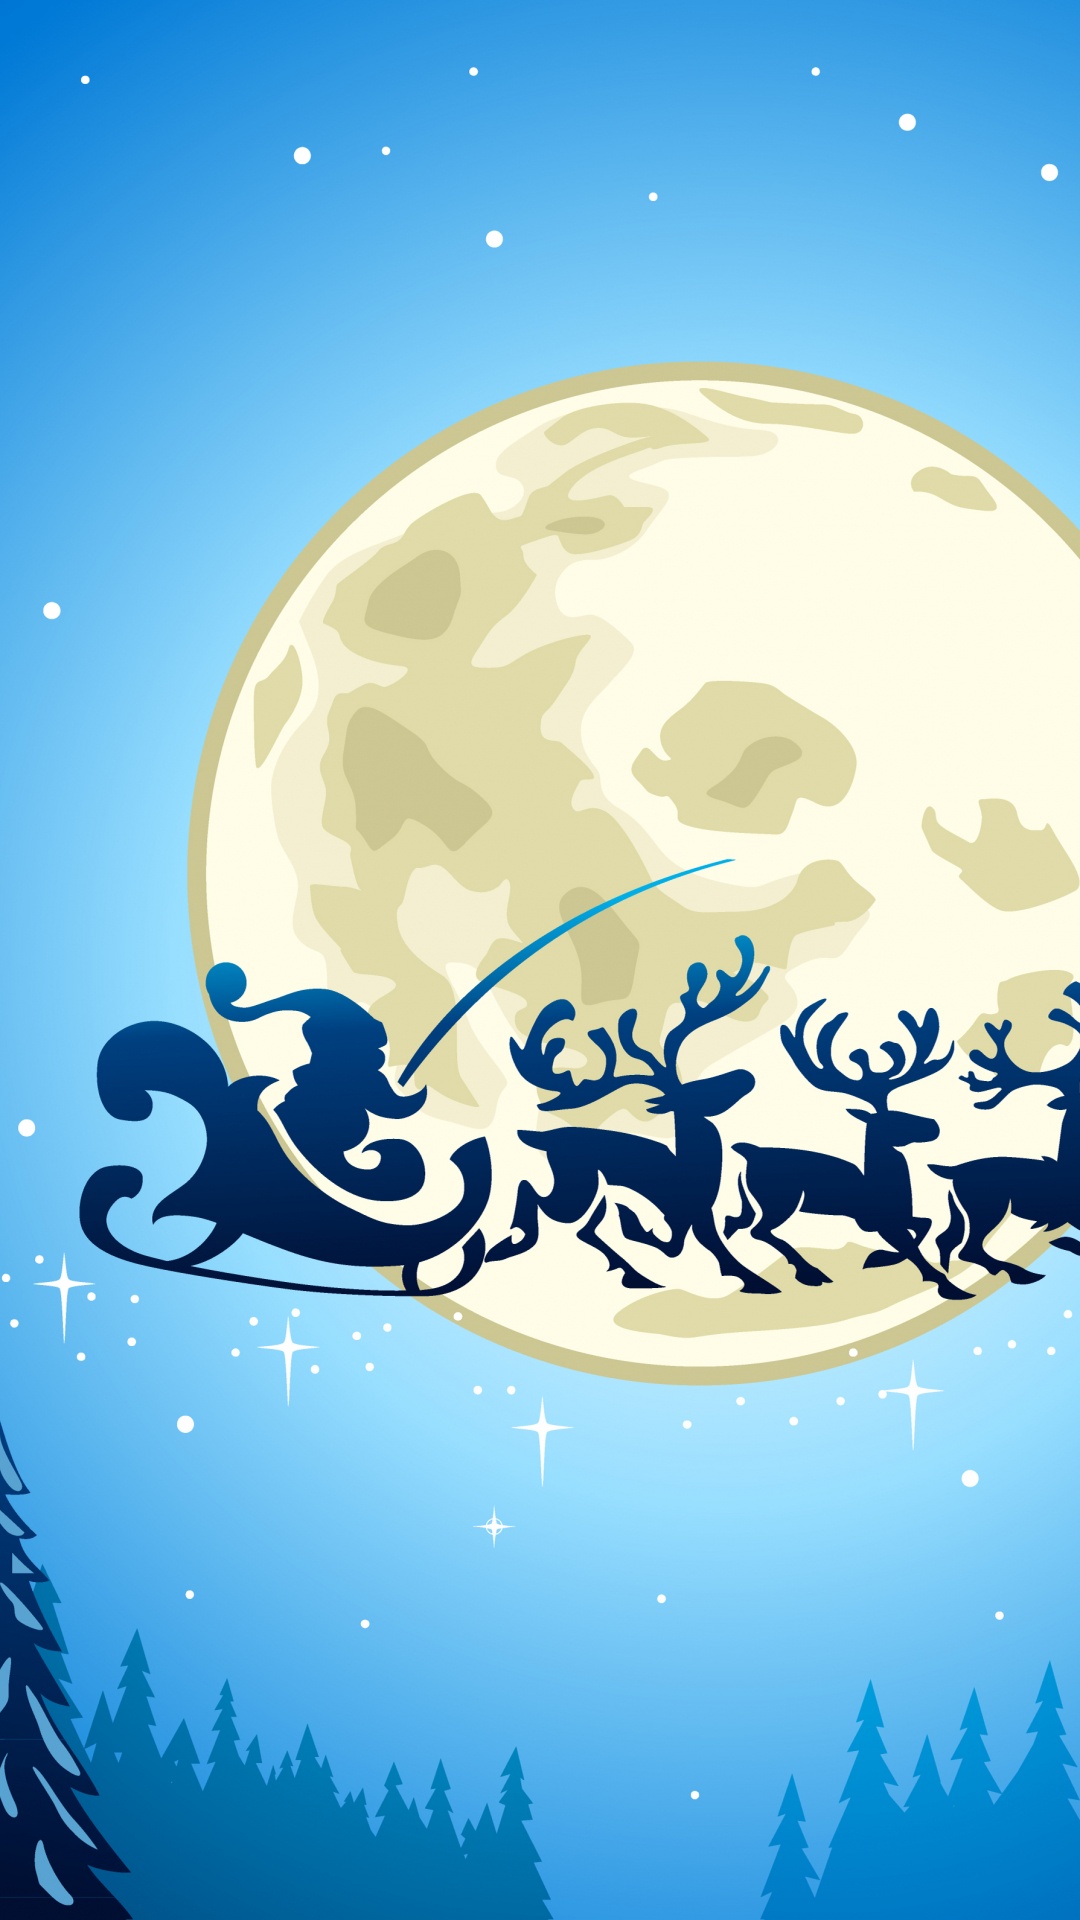 Le Jour De Noël, Santa Claus, Illustration, Ded Moroz, Blue. Wallpaper in 1080x1920 Resolution